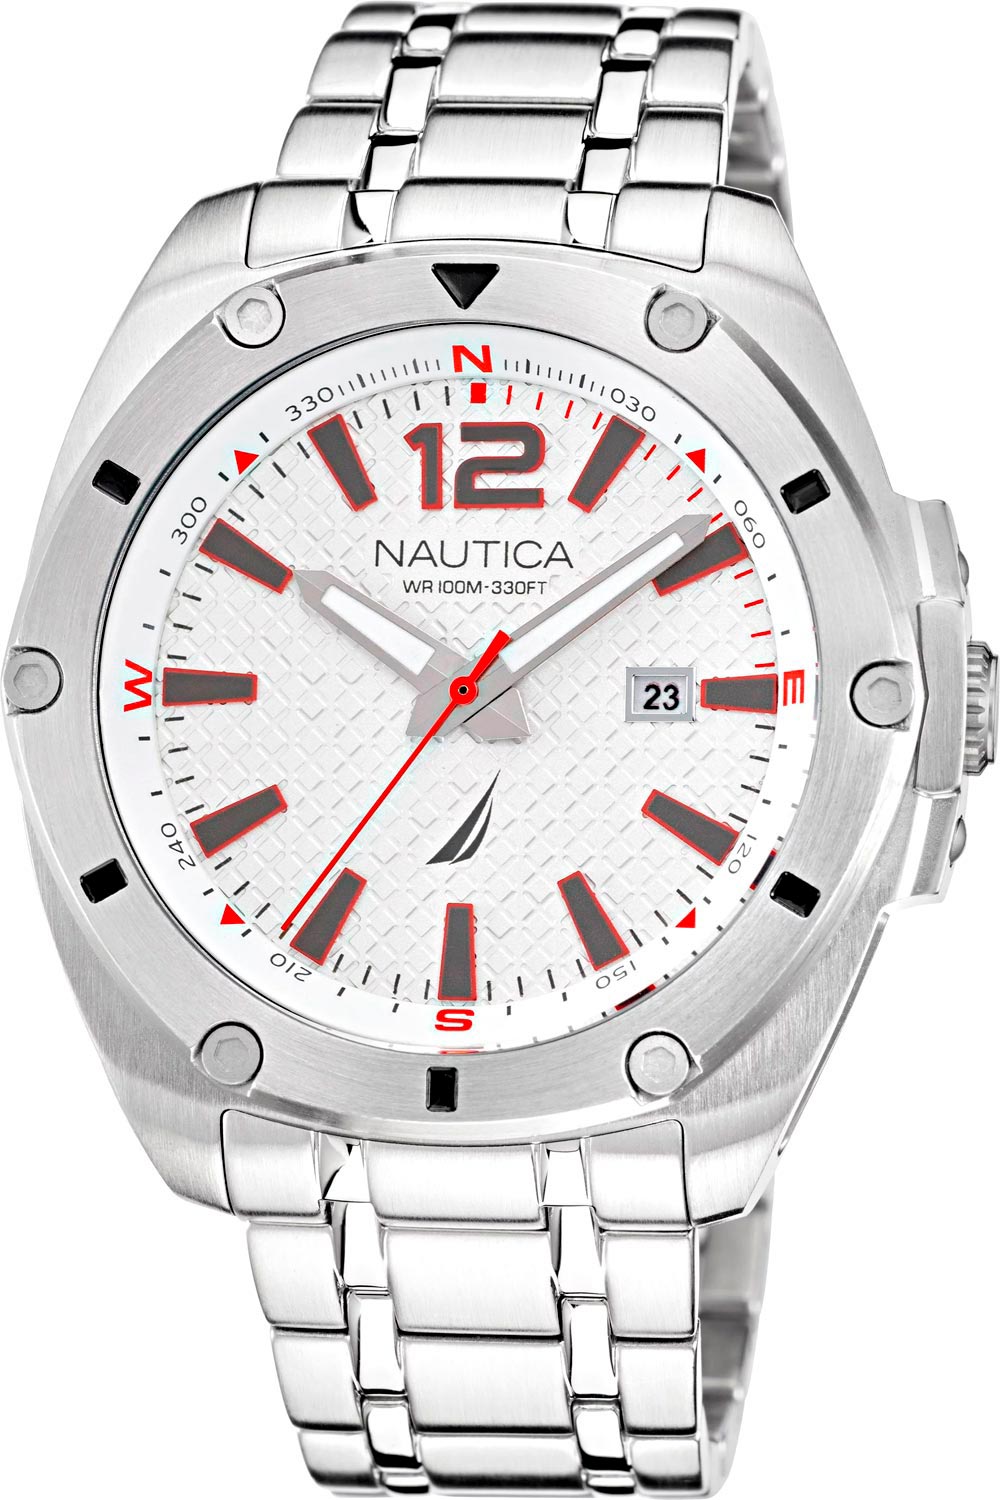 Наручные часы мужские Nautica NAPTCS221